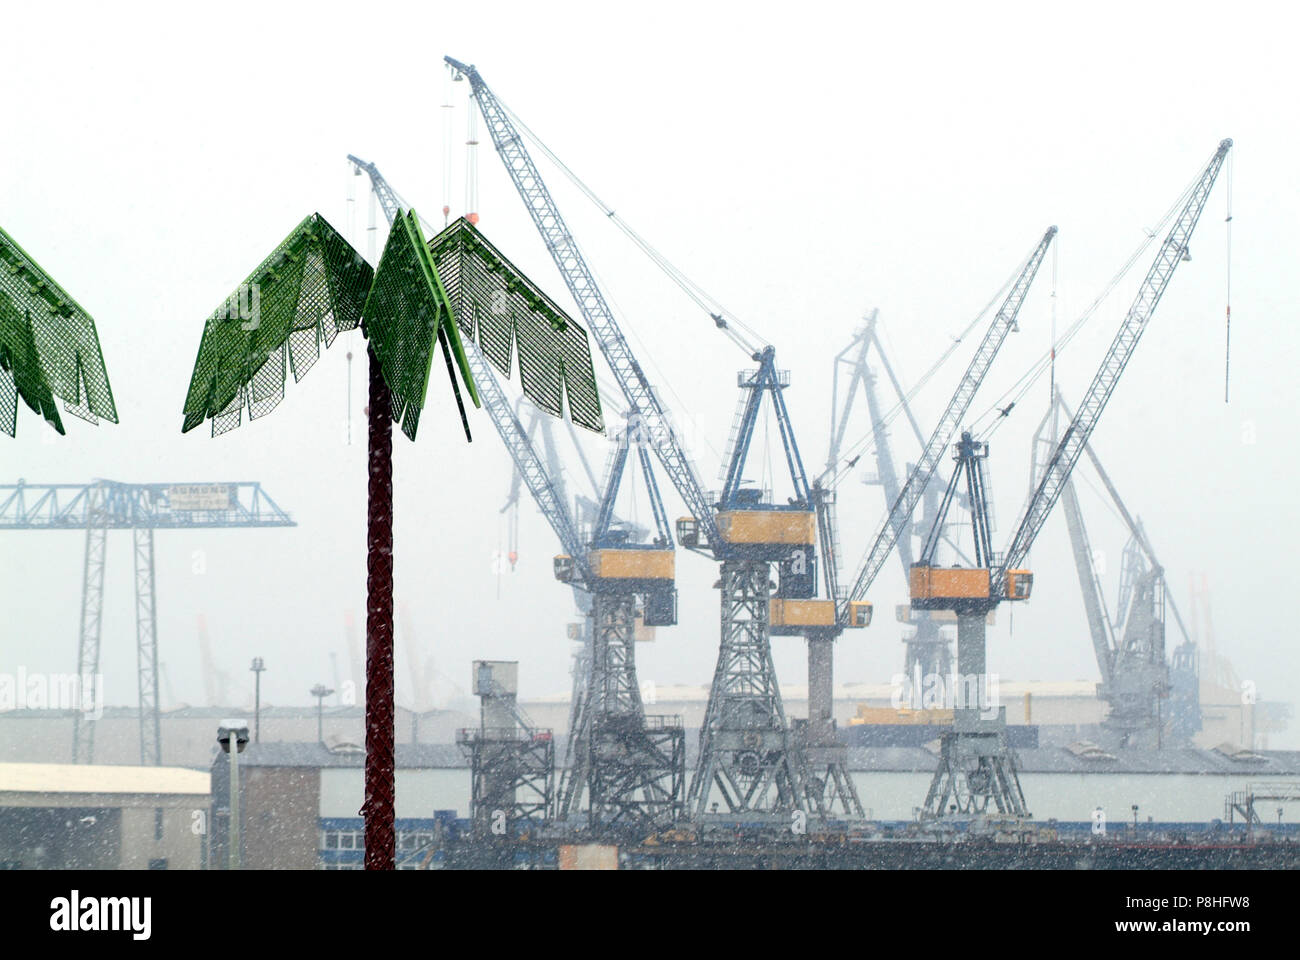 Blick vom Hamburger Pinnasberg auf den Hafen und die Kräne der Werft Blohm und Voss. Im Vordergrund künstliche Palmen. Schlechtes Wetter. Foto Stock